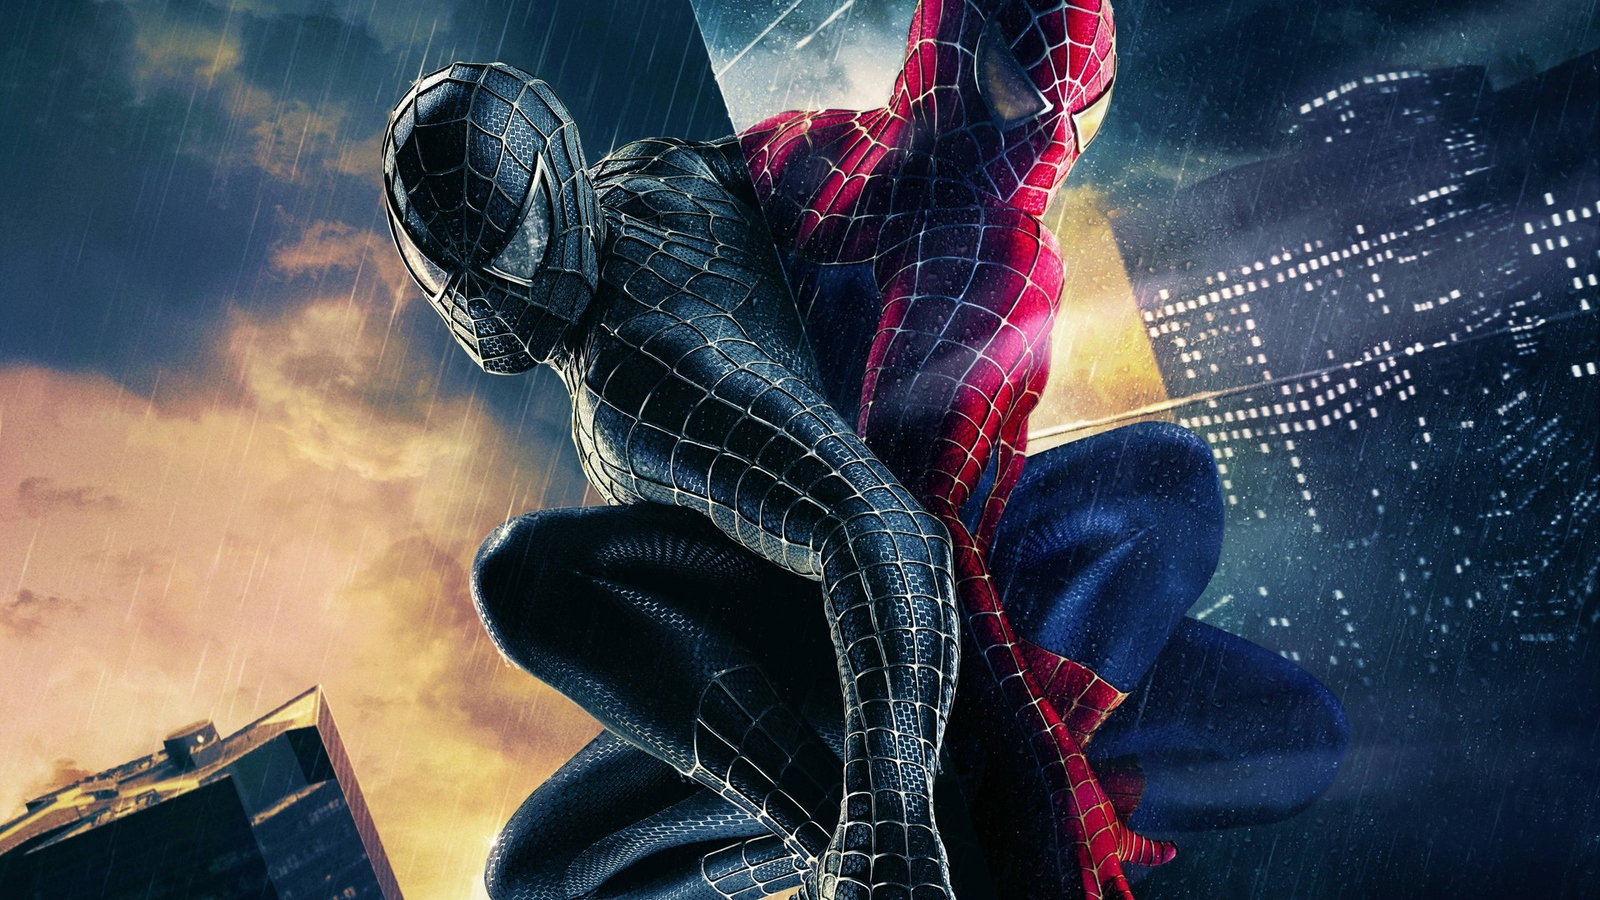 Download Black Spiderman, Black, Spider man Wallpaper in 1600x900 Resolution